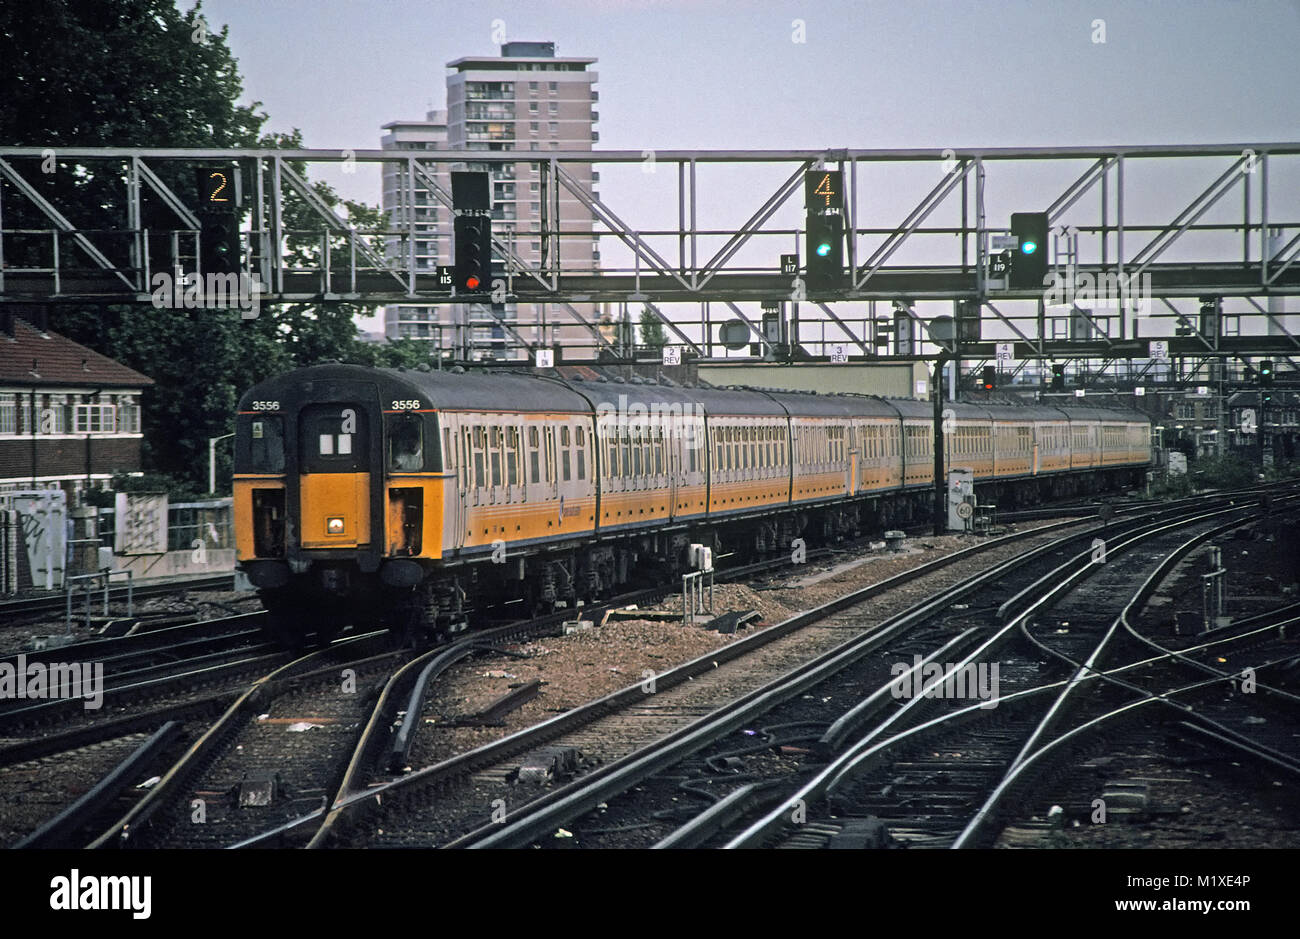 Passager porte Slam train approchant la station London Bridge Banque D'Images